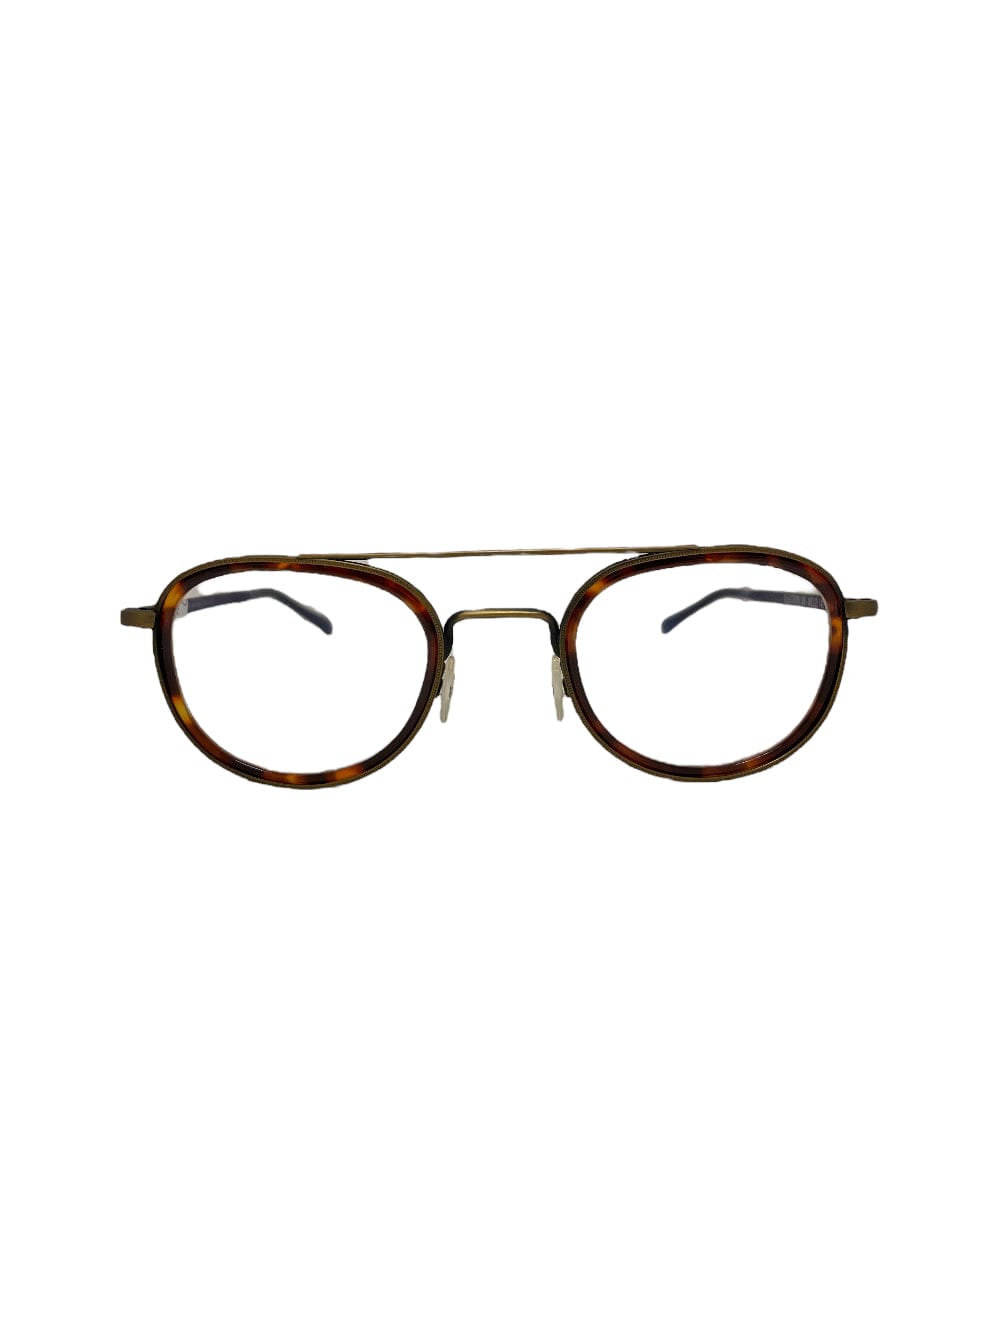 Electrony - Bronze & Havana Glasses